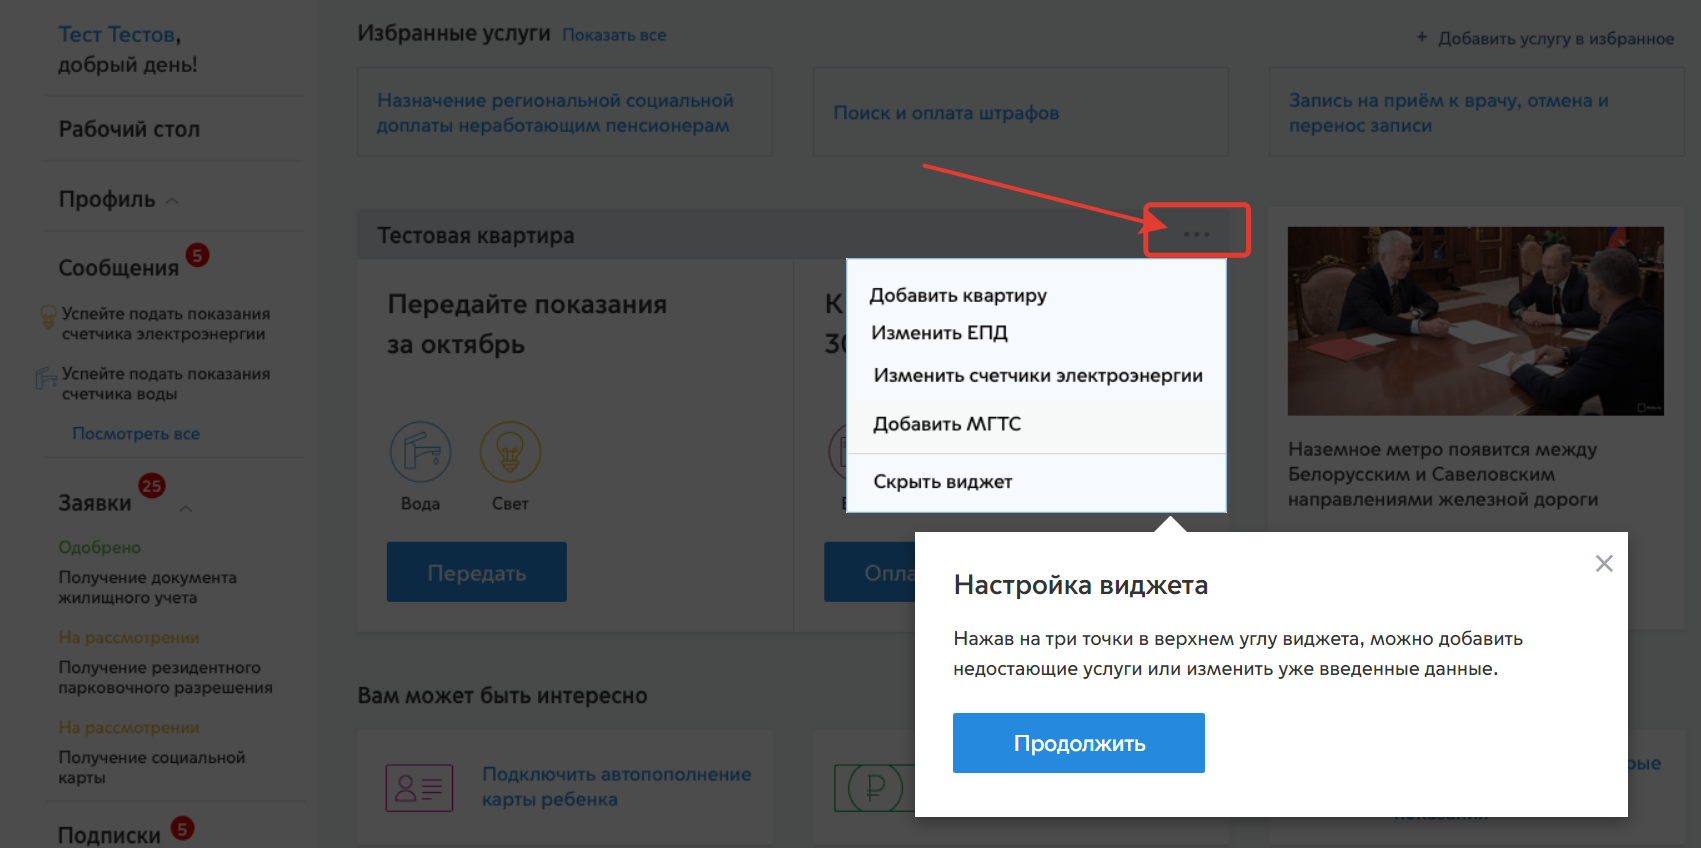 Личный кабинет на мосгосуслугах: регистрация, вход на сайт mos.ru, как подать показания